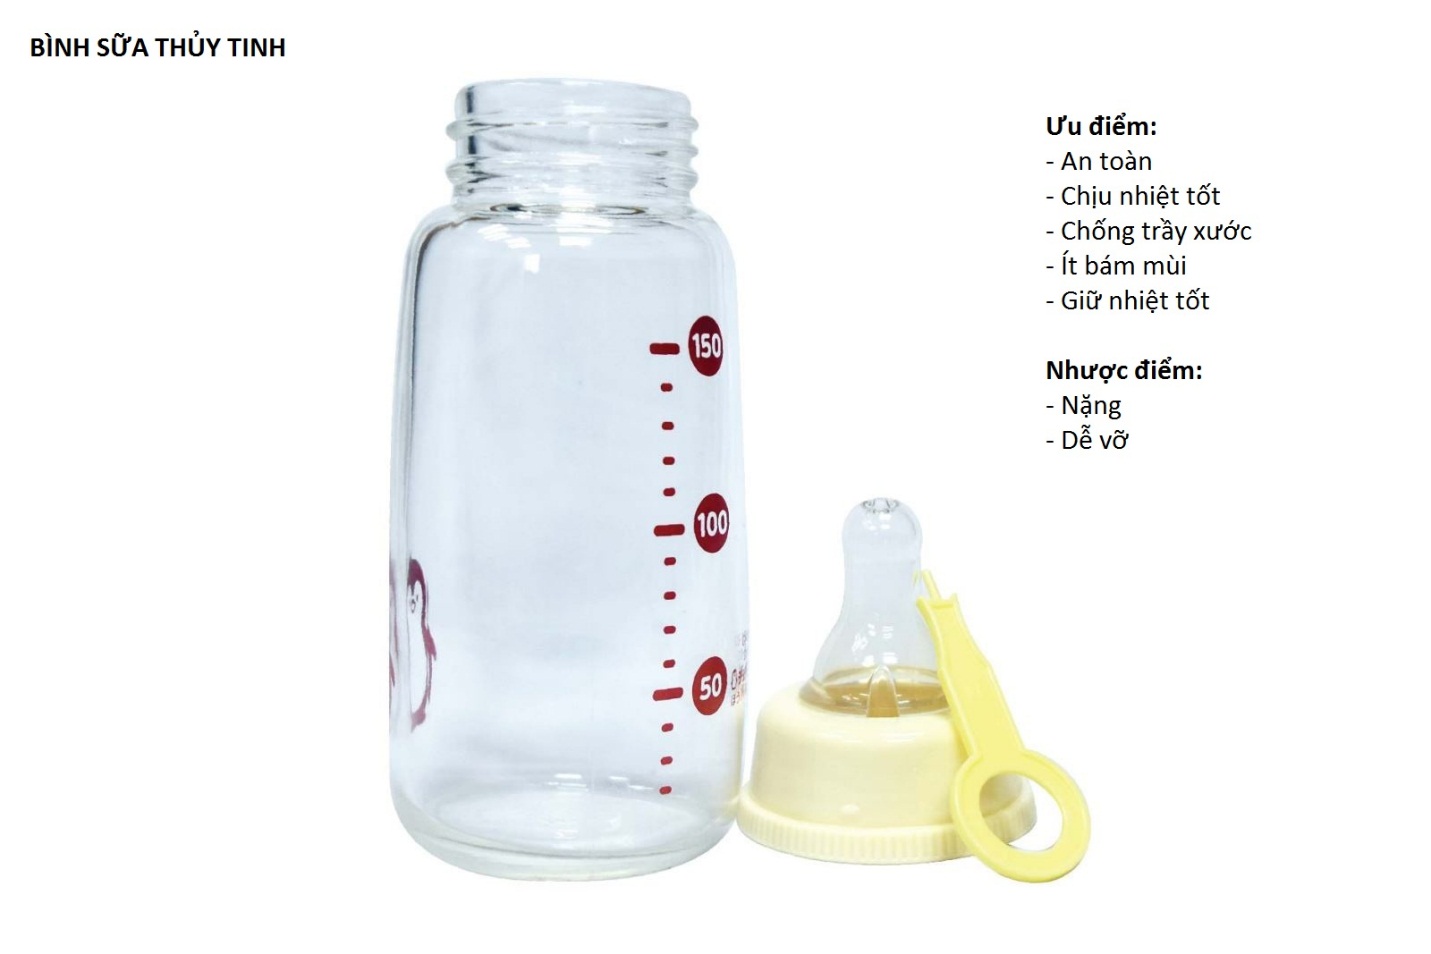 Nên dùng bình sữa thủy tinh hay nhựa cho bé? (2)